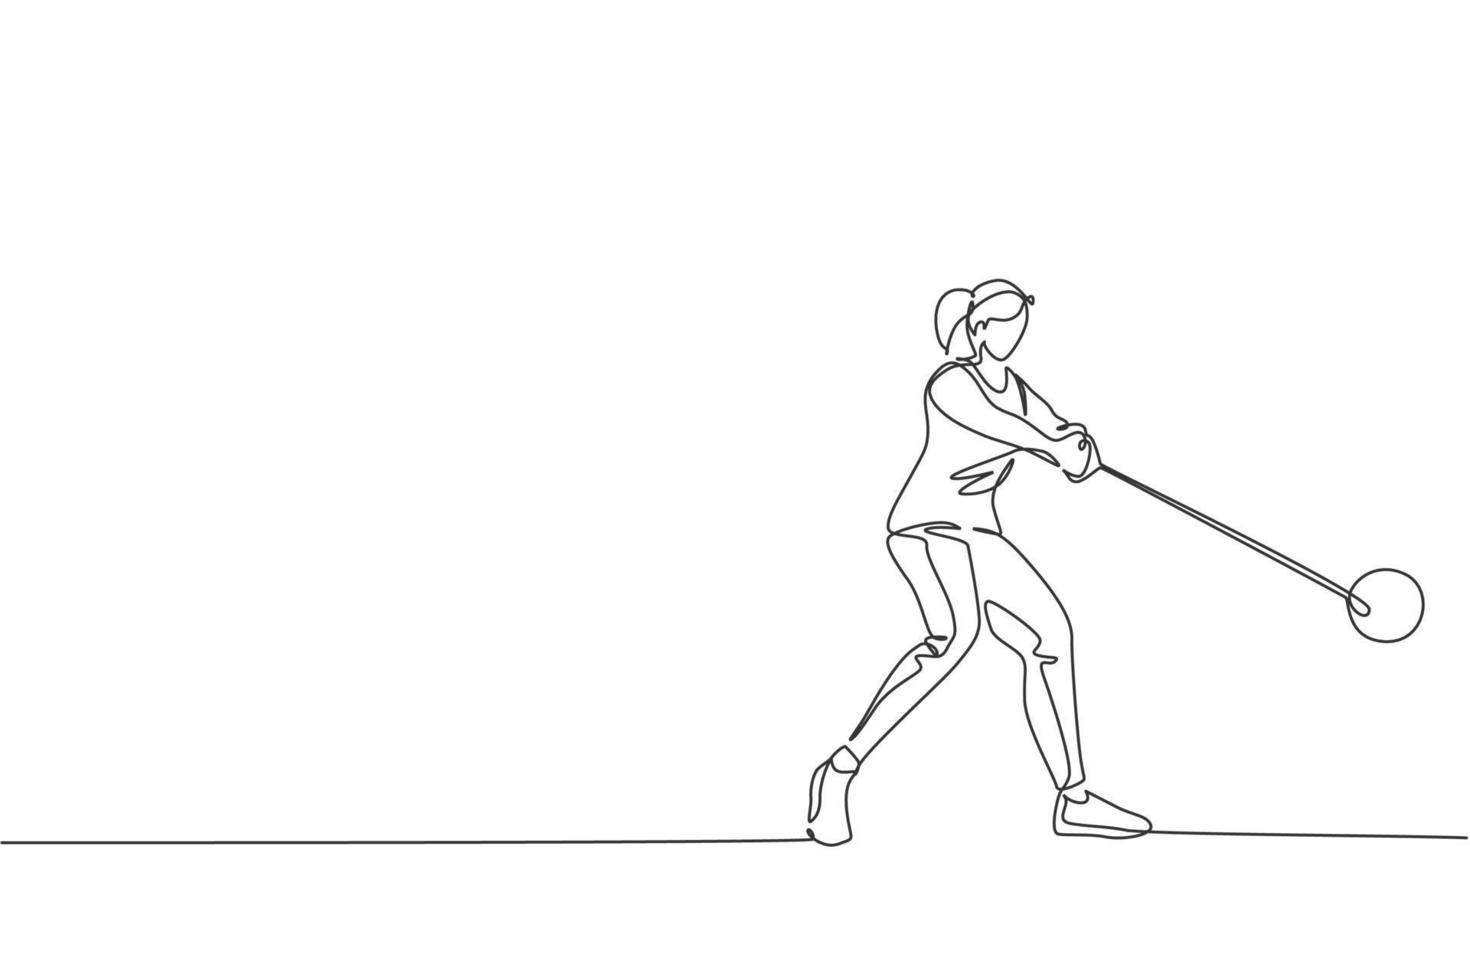 un dibujo de una sola línea de una mujer joven y enérgica que se ejercita para concentrarse mientras se balancea un gráfico de ilustración vectorial de lanzamiento de martillo. concepto de deporte atlético de estilo de vida saludable. diseño moderno de dibujo de línea continua vector